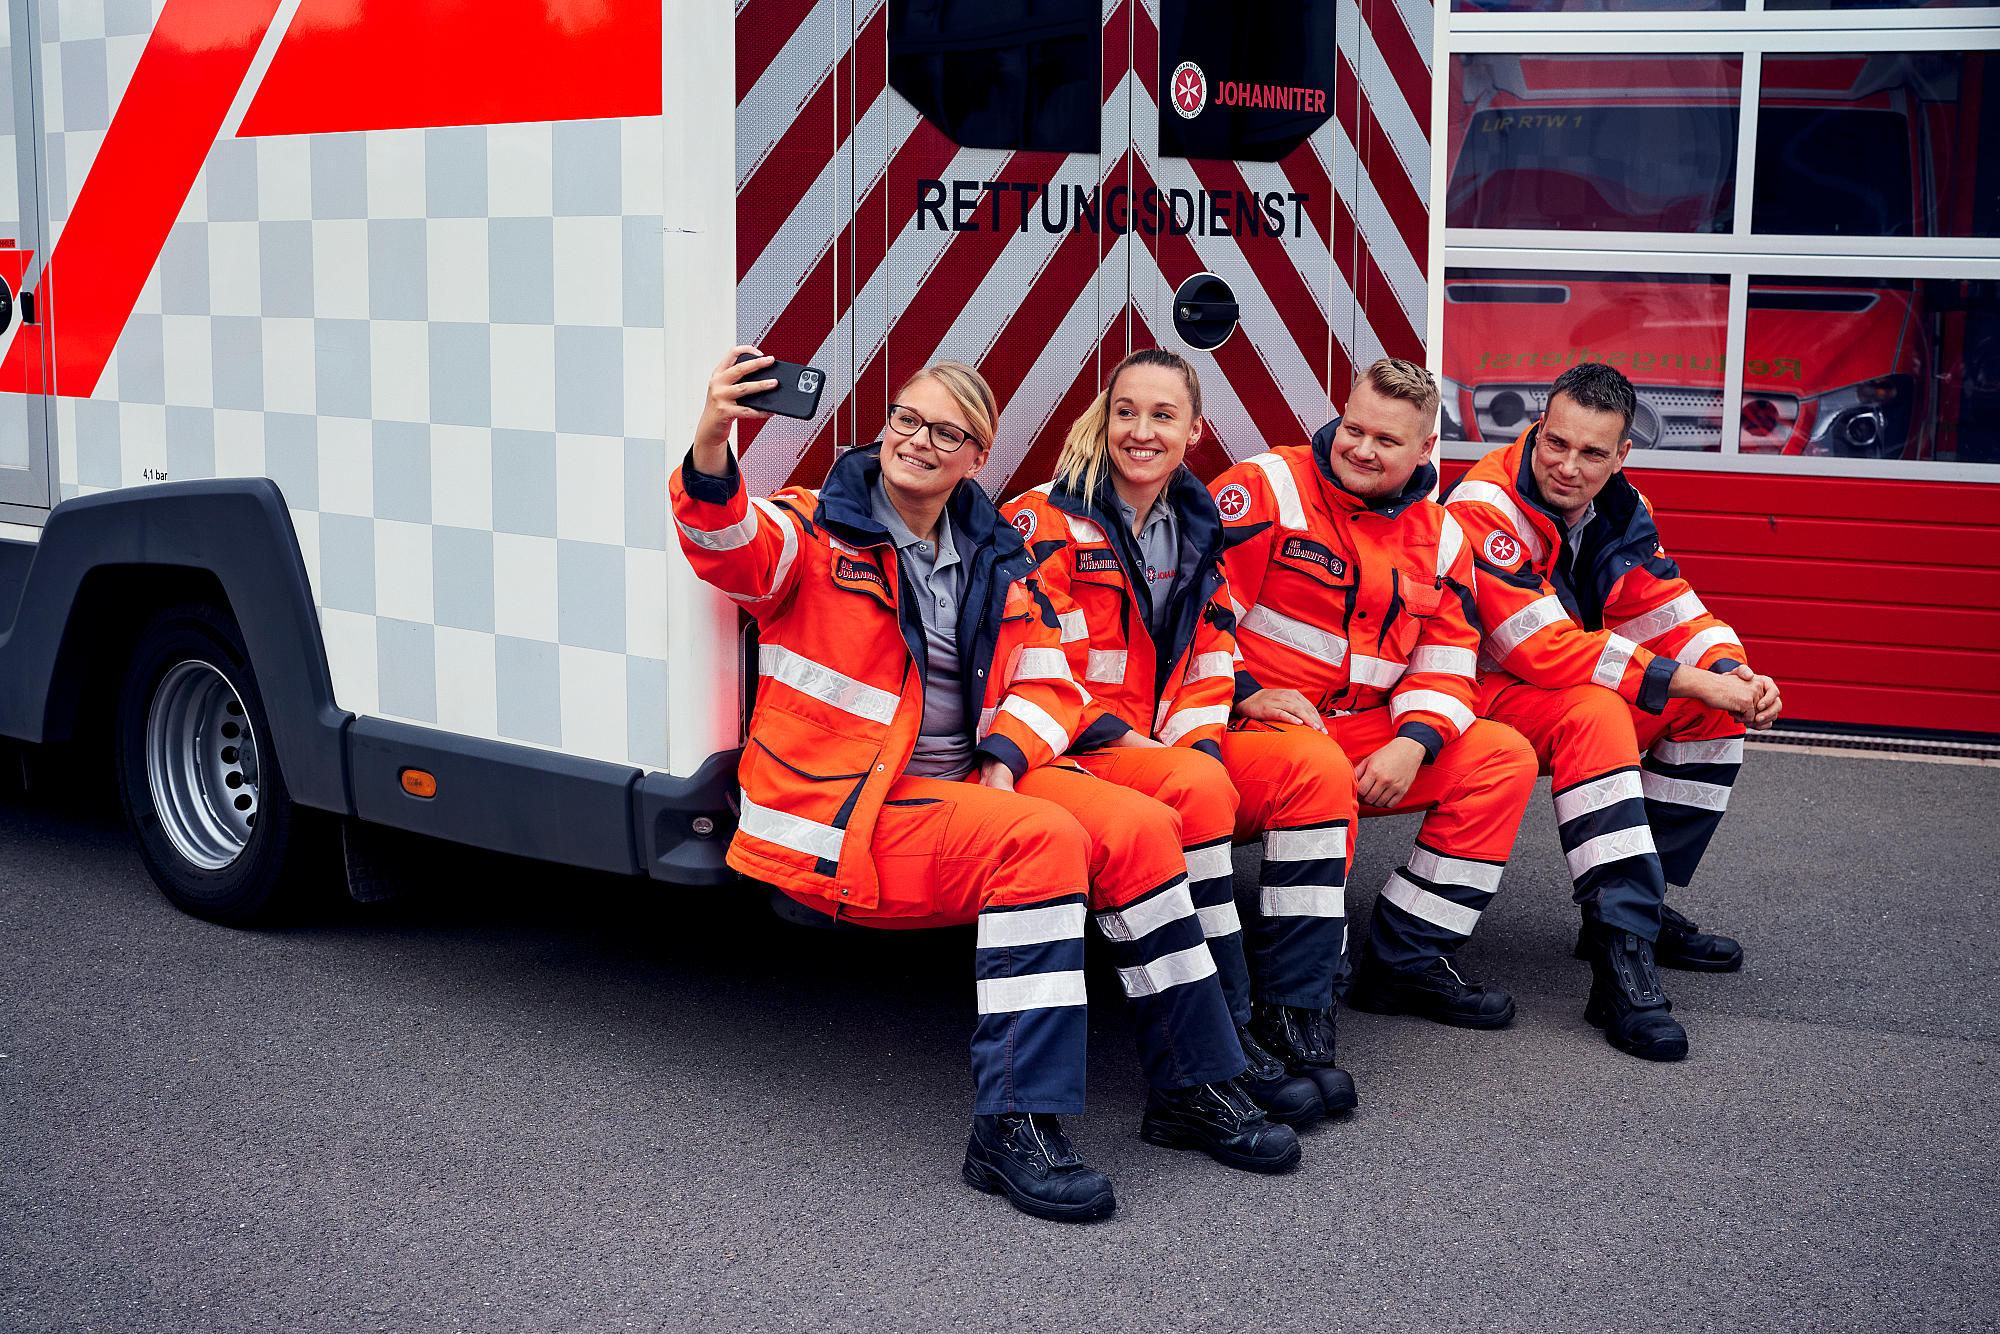 Bilder Johanniter-Unfall-Hilfe e.V. - Rettungswache Hannover-Wasserturm